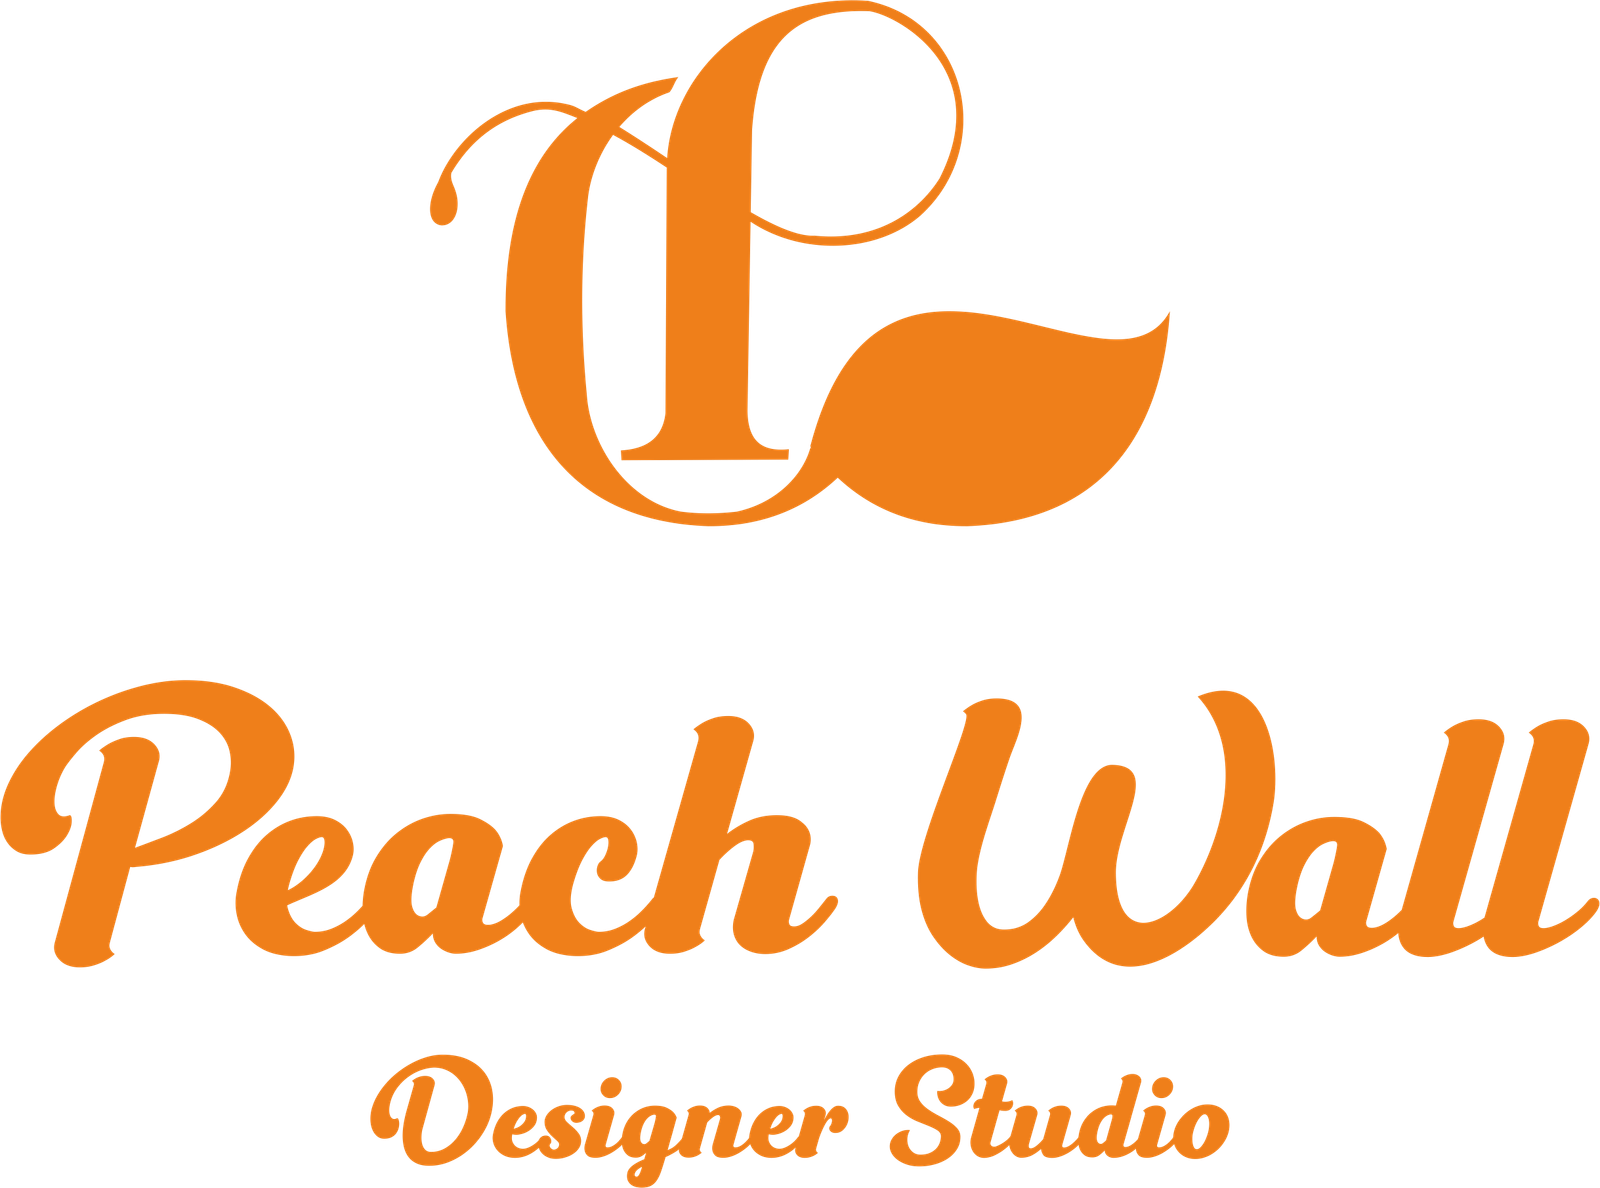 peach wall logo